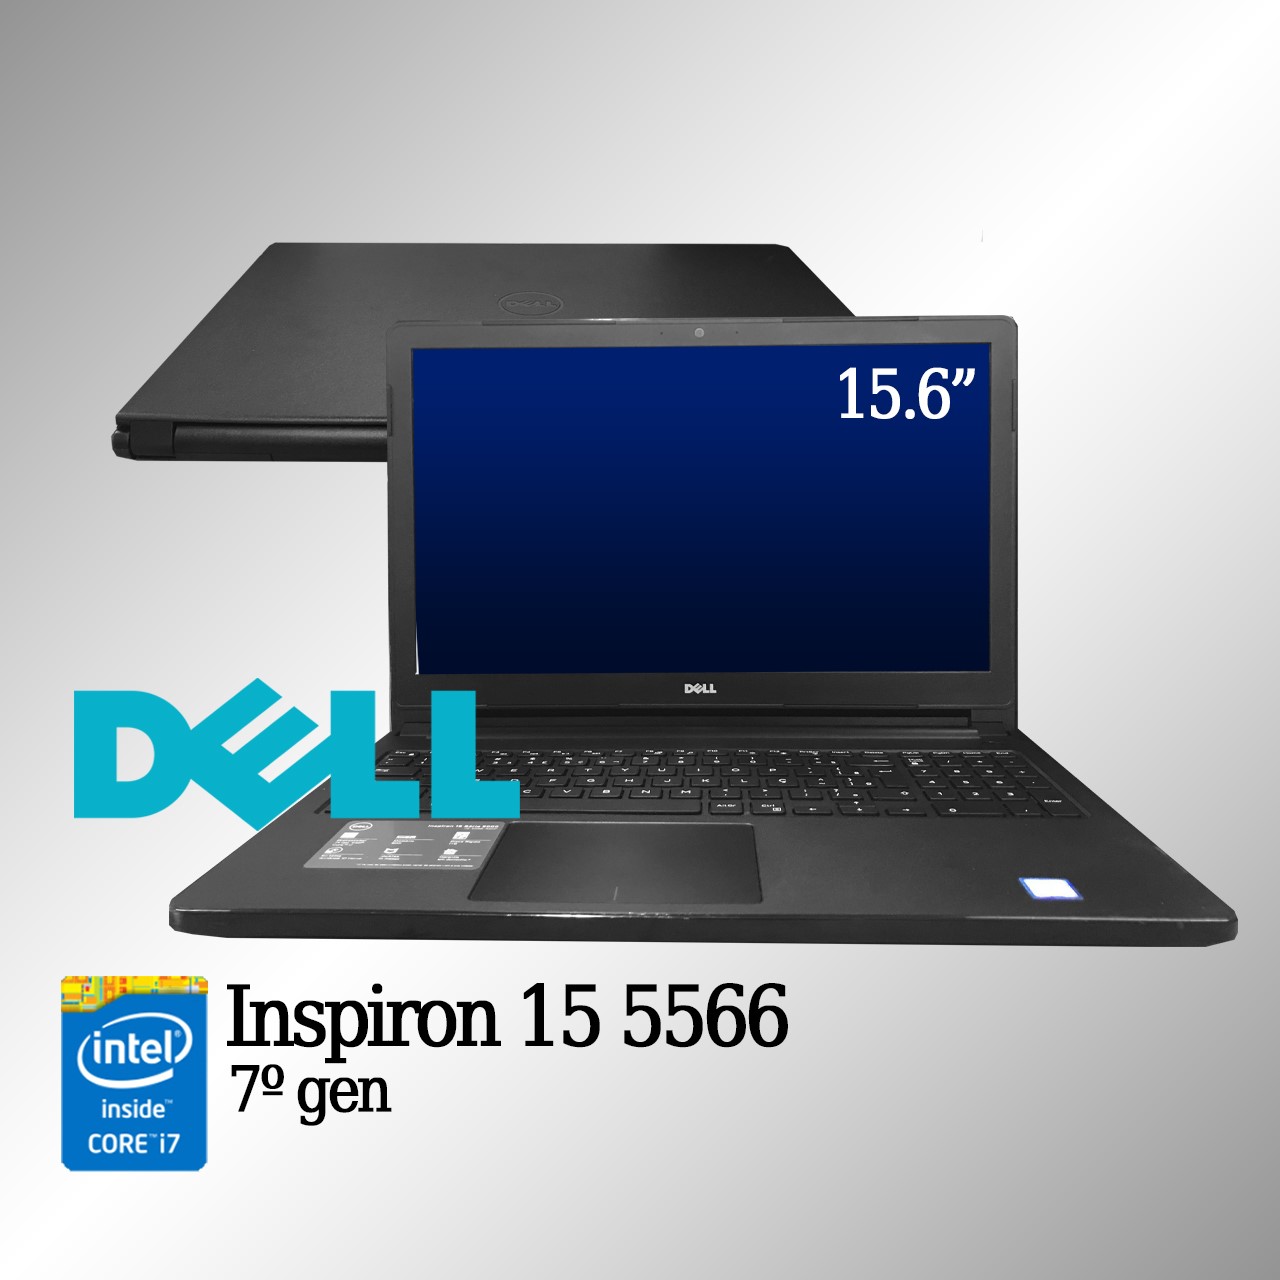 Laptop Dell Inspiron 15 5566 Intel i7 de 7a. Geração 8GB de memória RAM e 240GB SSD